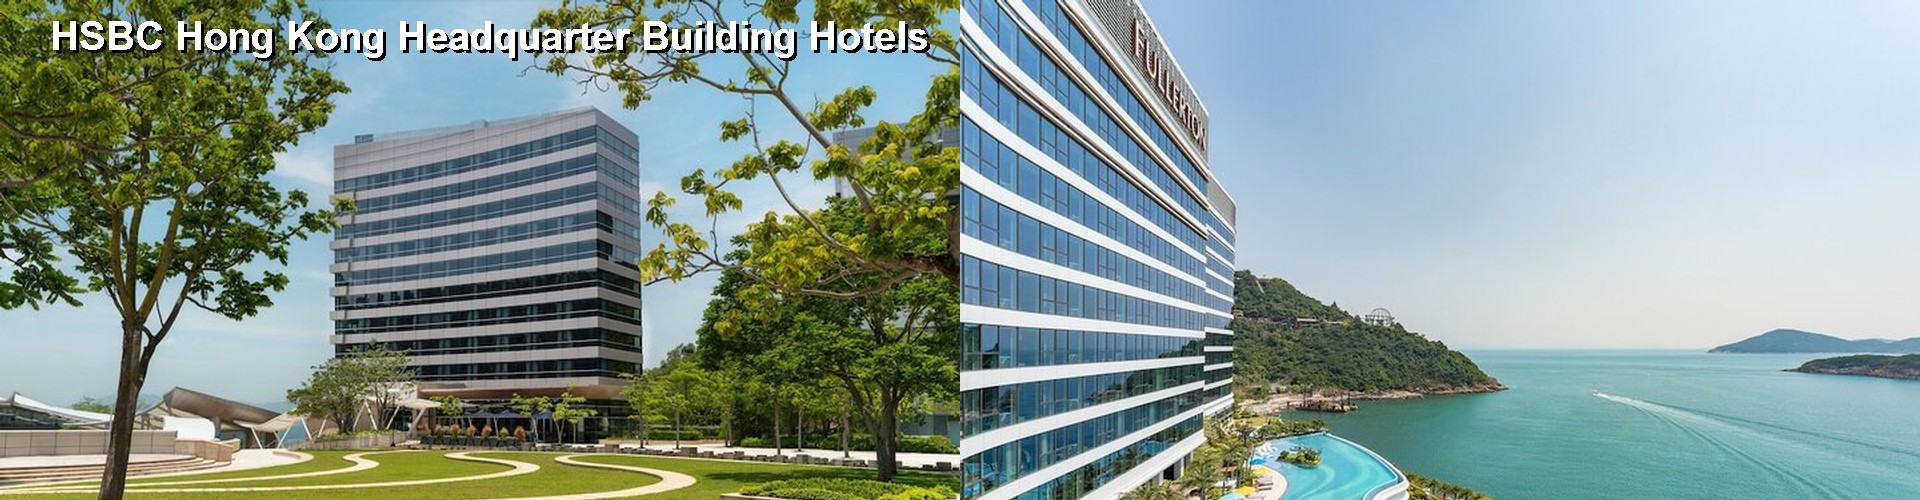 4 Best Hotels near HSBC Hong Kong Headquarter Building